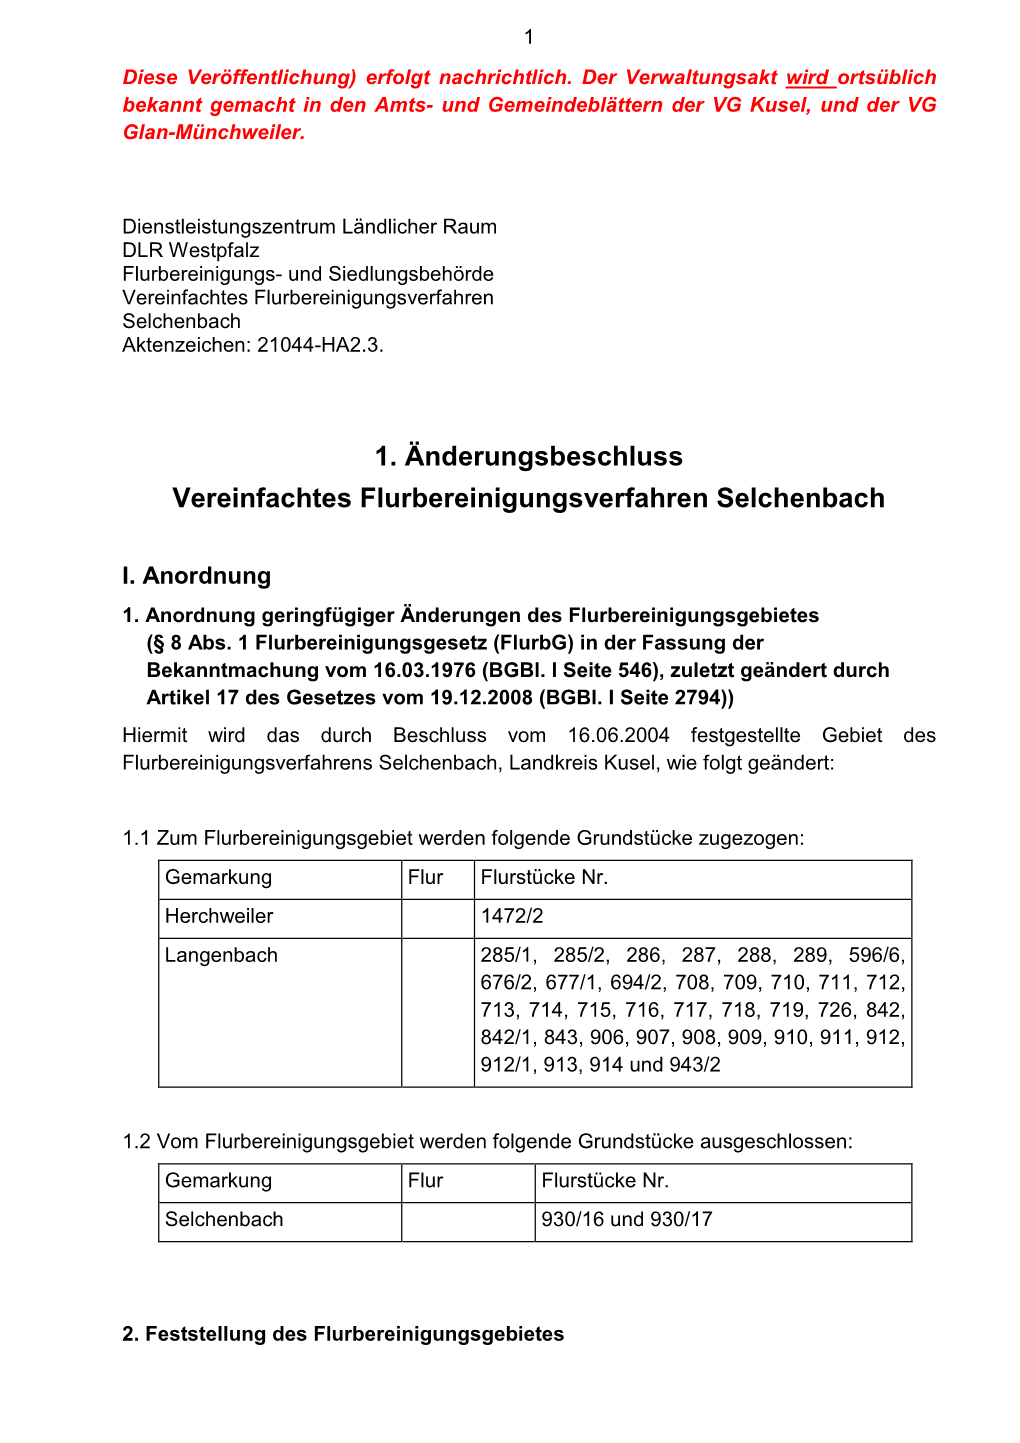 1. Änderungsbeschluss Vereinfachtes Flurbereinigungsverfahren Selchenbach